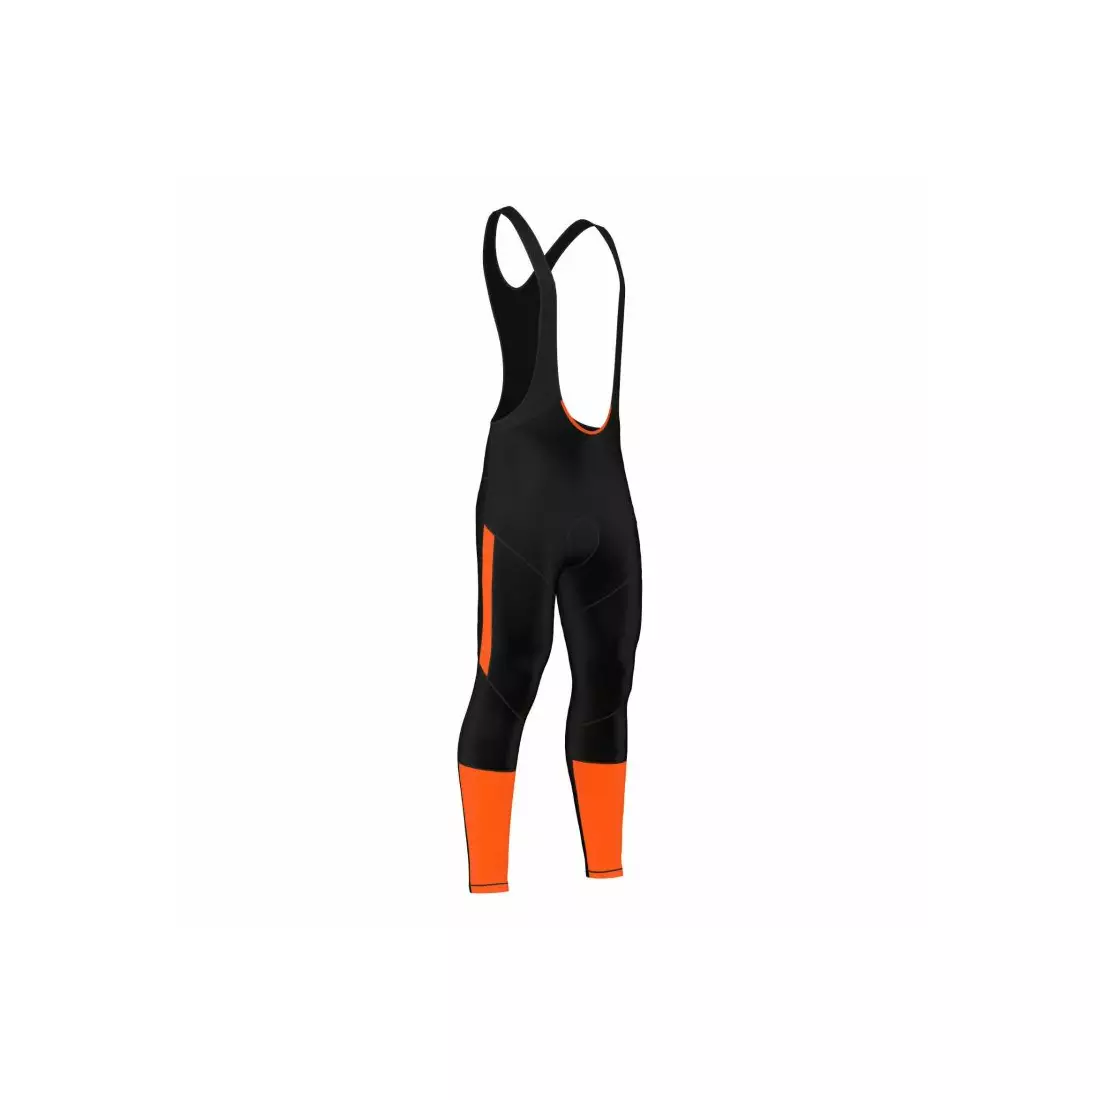 Zateplené cyklistické kalhoty FDX 1220, černo-oranžové